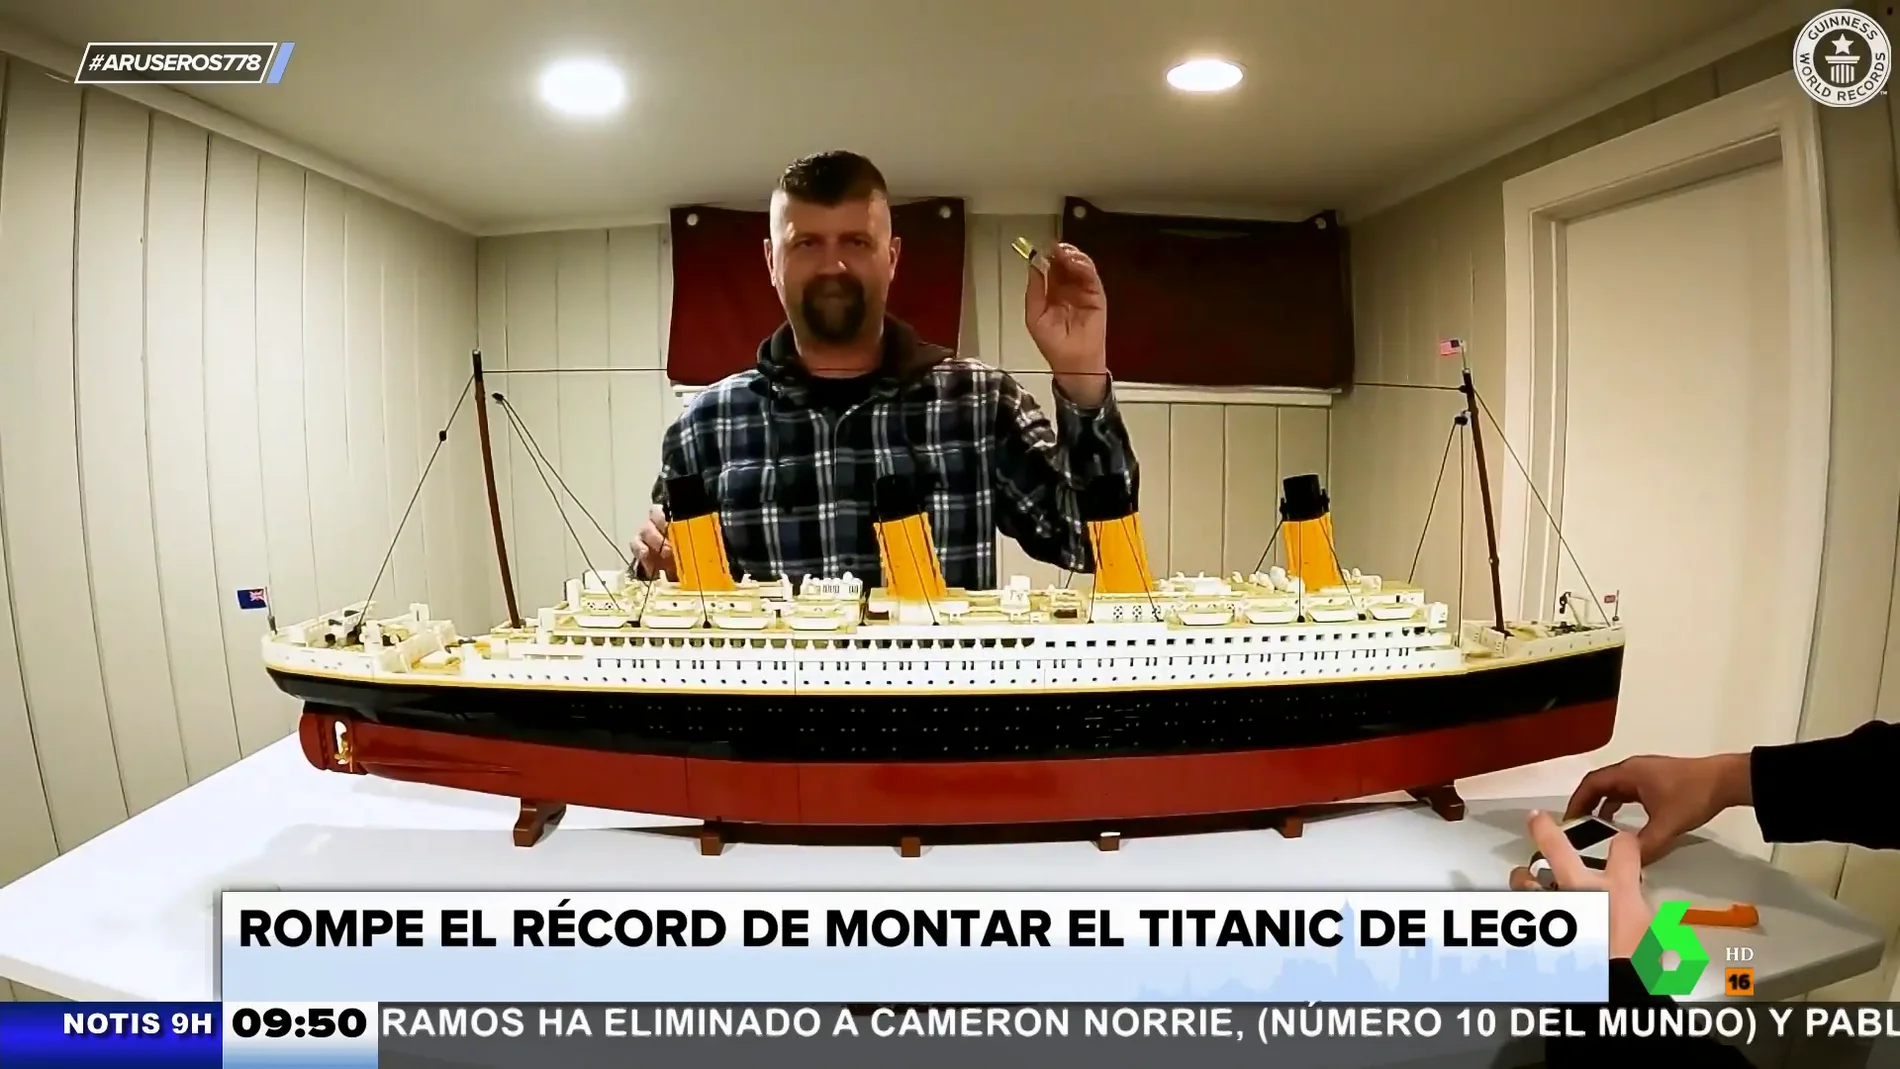 Un hombre bate un récord montando el de Lego en 14 horas